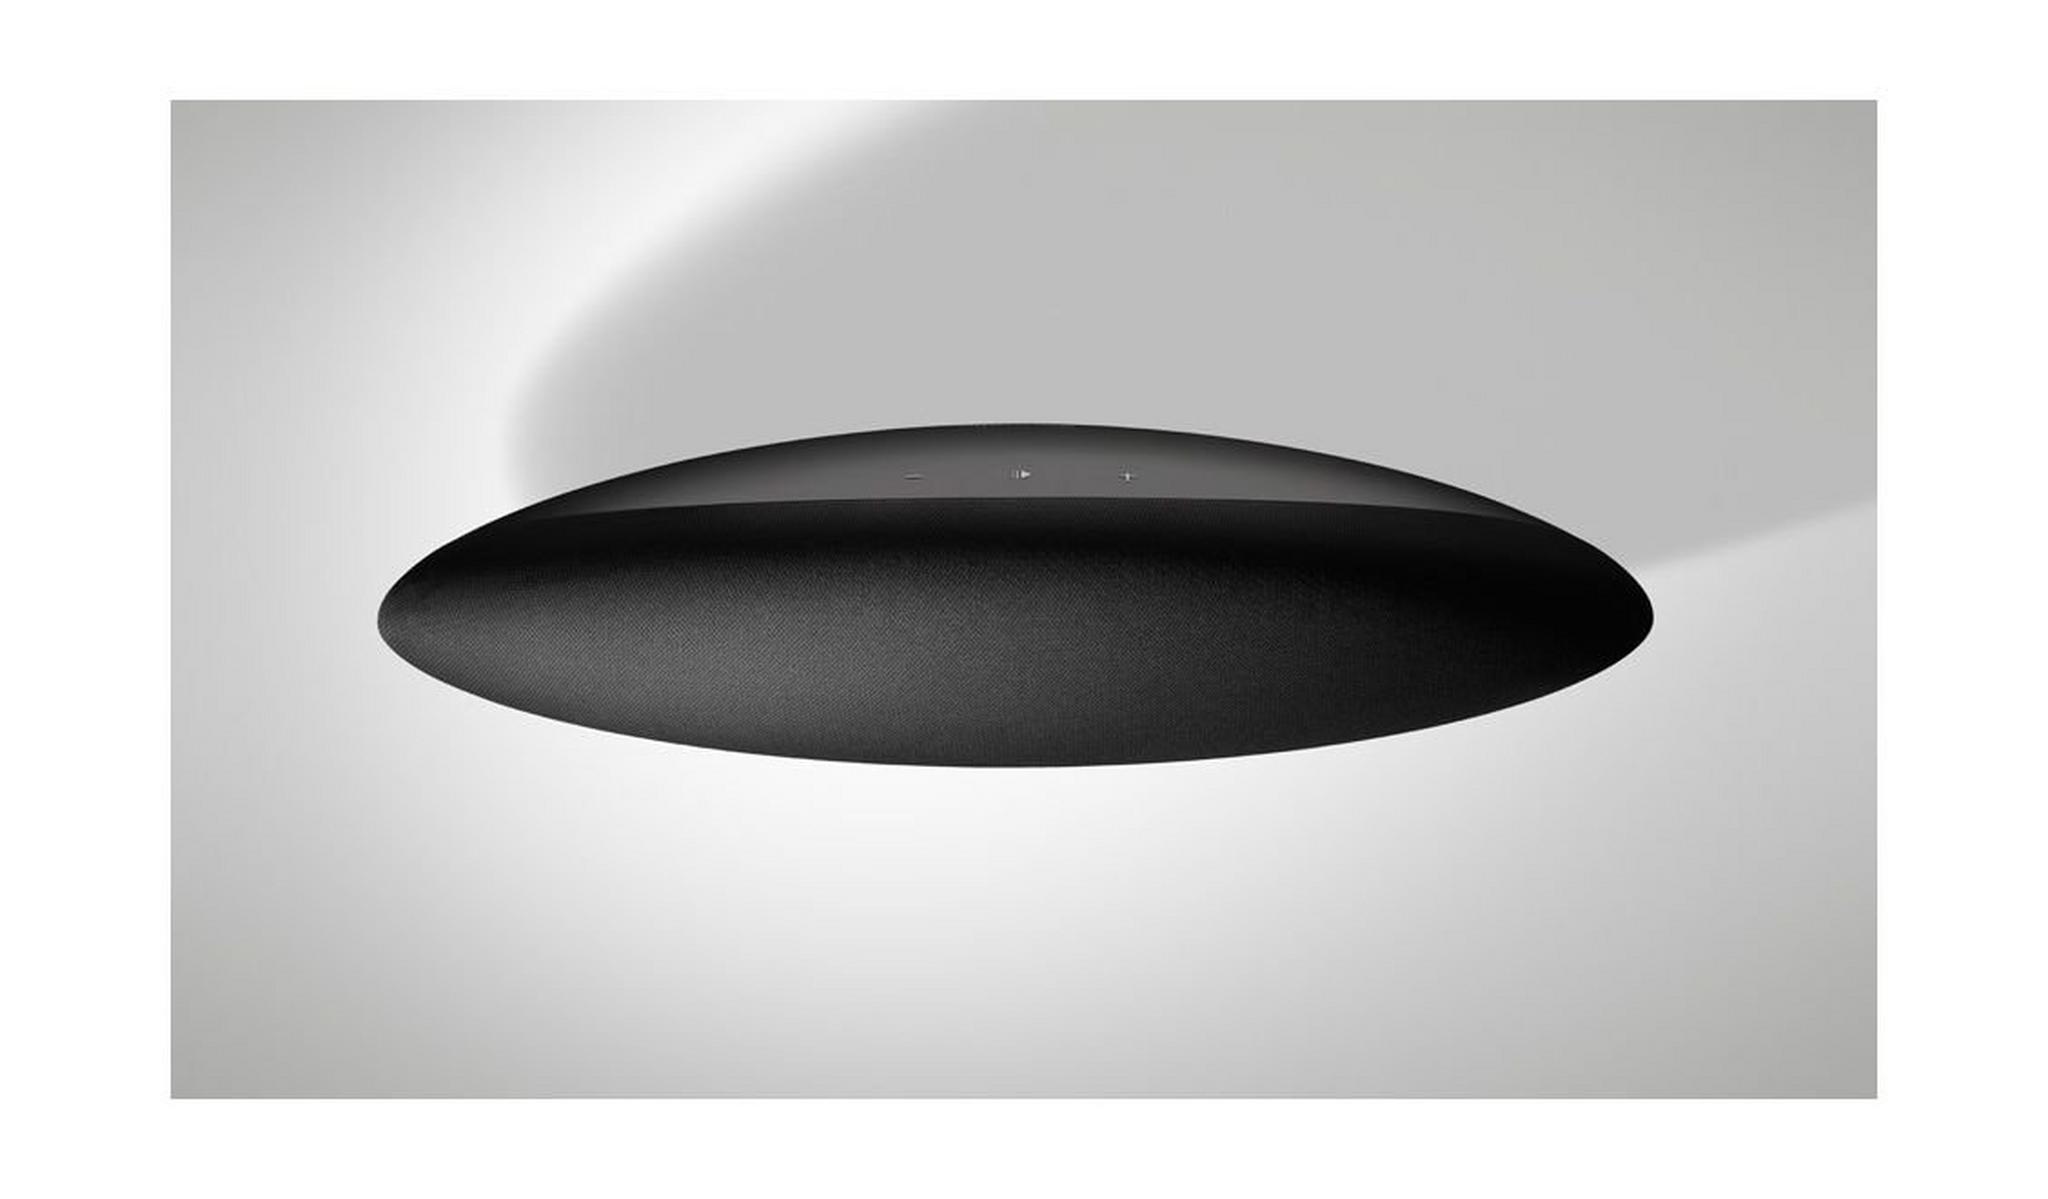 B&W Zeppelin Wireless Bluetooth Portable Speaker – Black